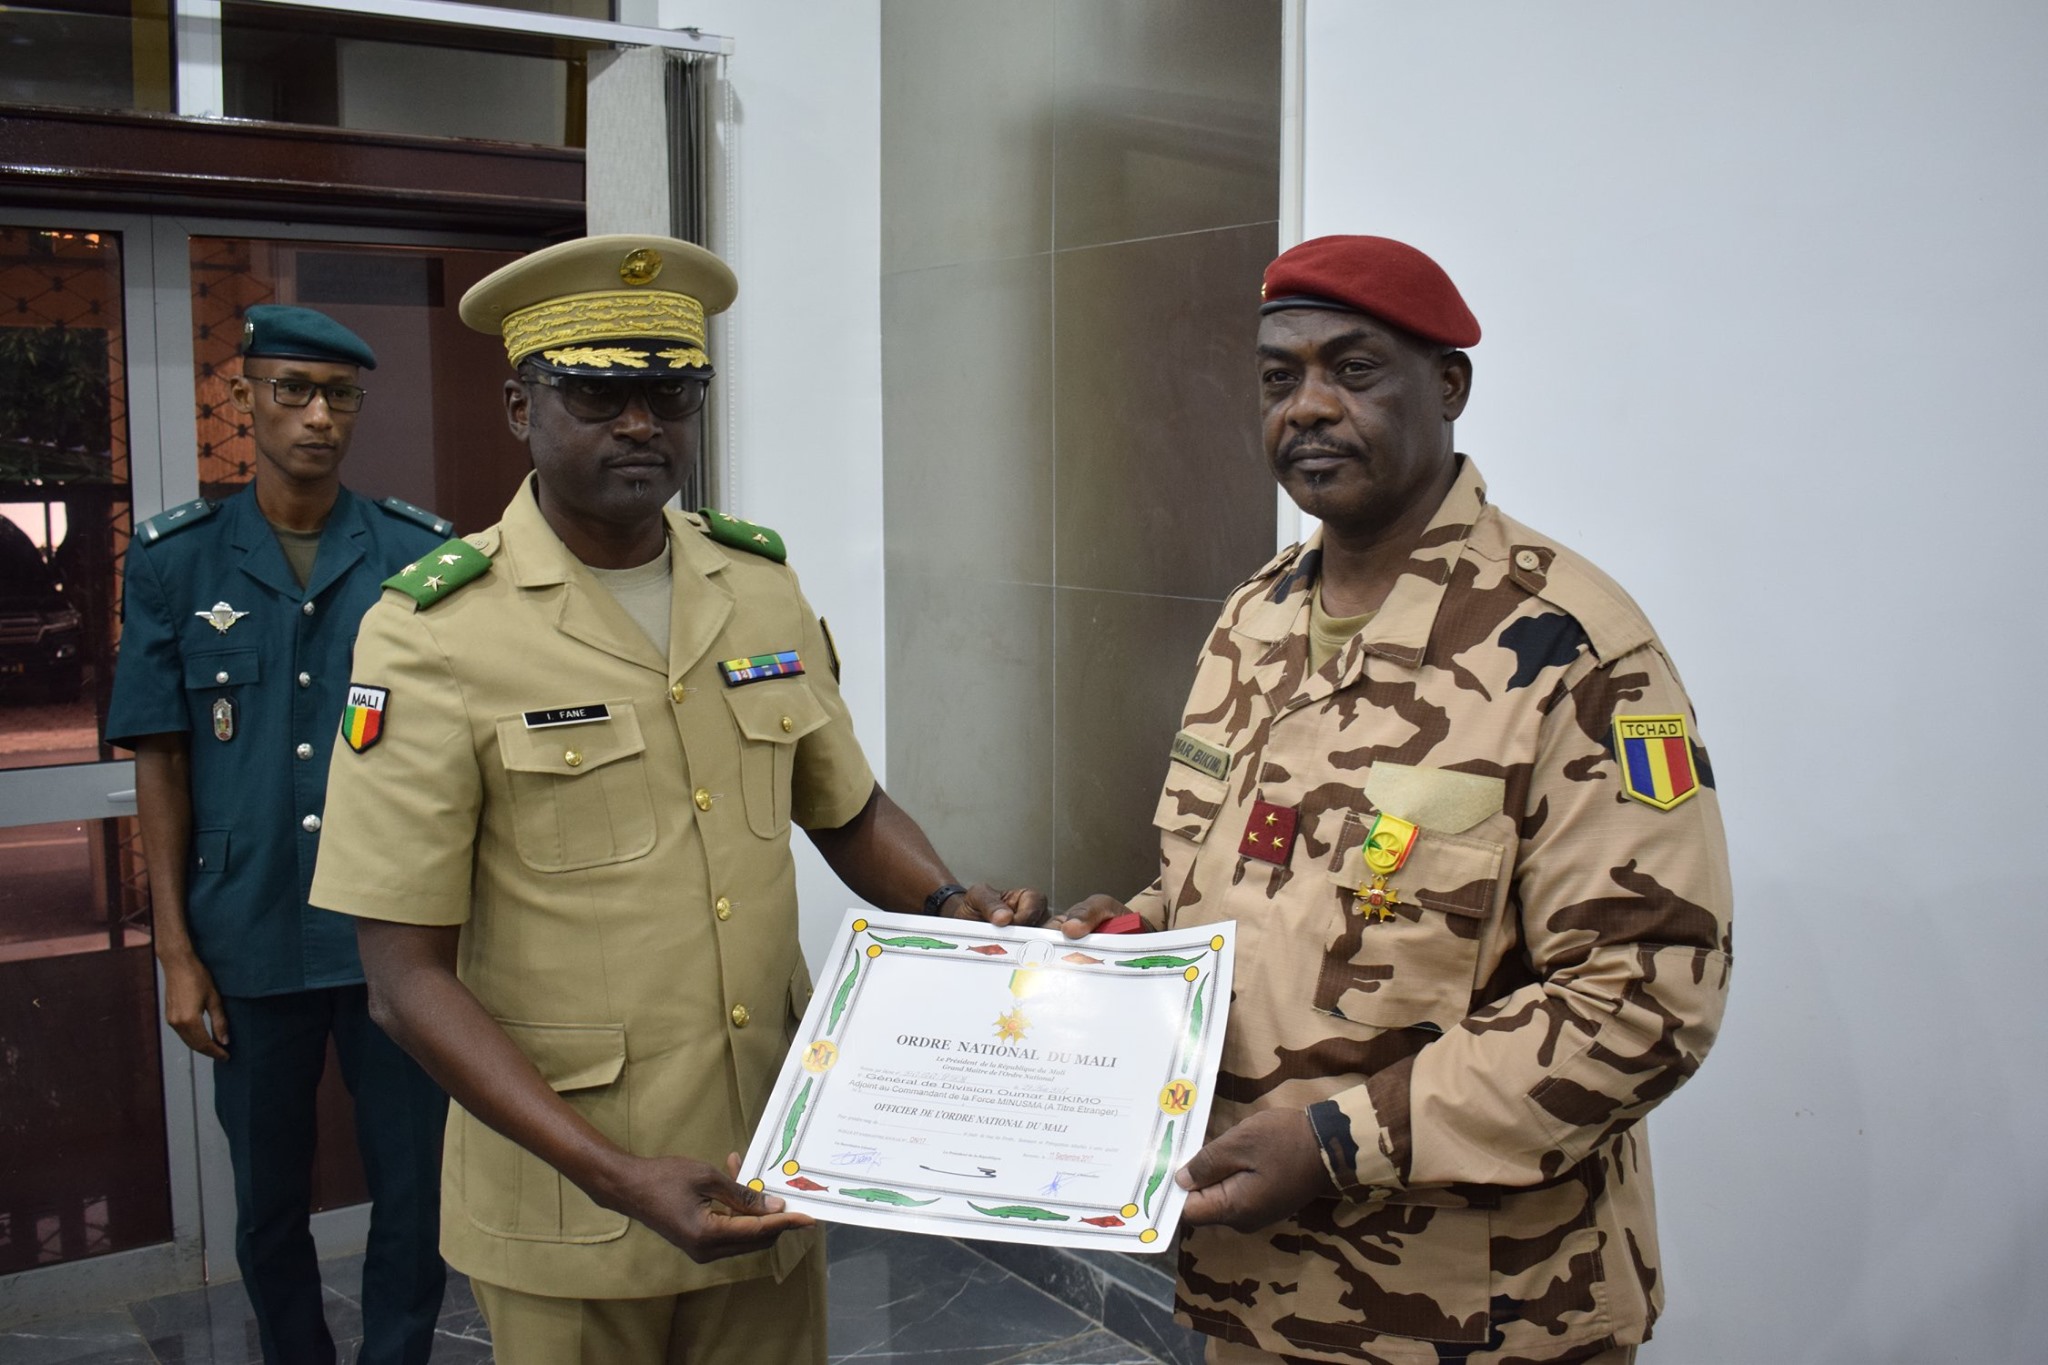 Le général tchadien Oumar Bikimo élevé au rang d’Officier de l’ordre national du Mali. © Force conjointe G5 Sahel